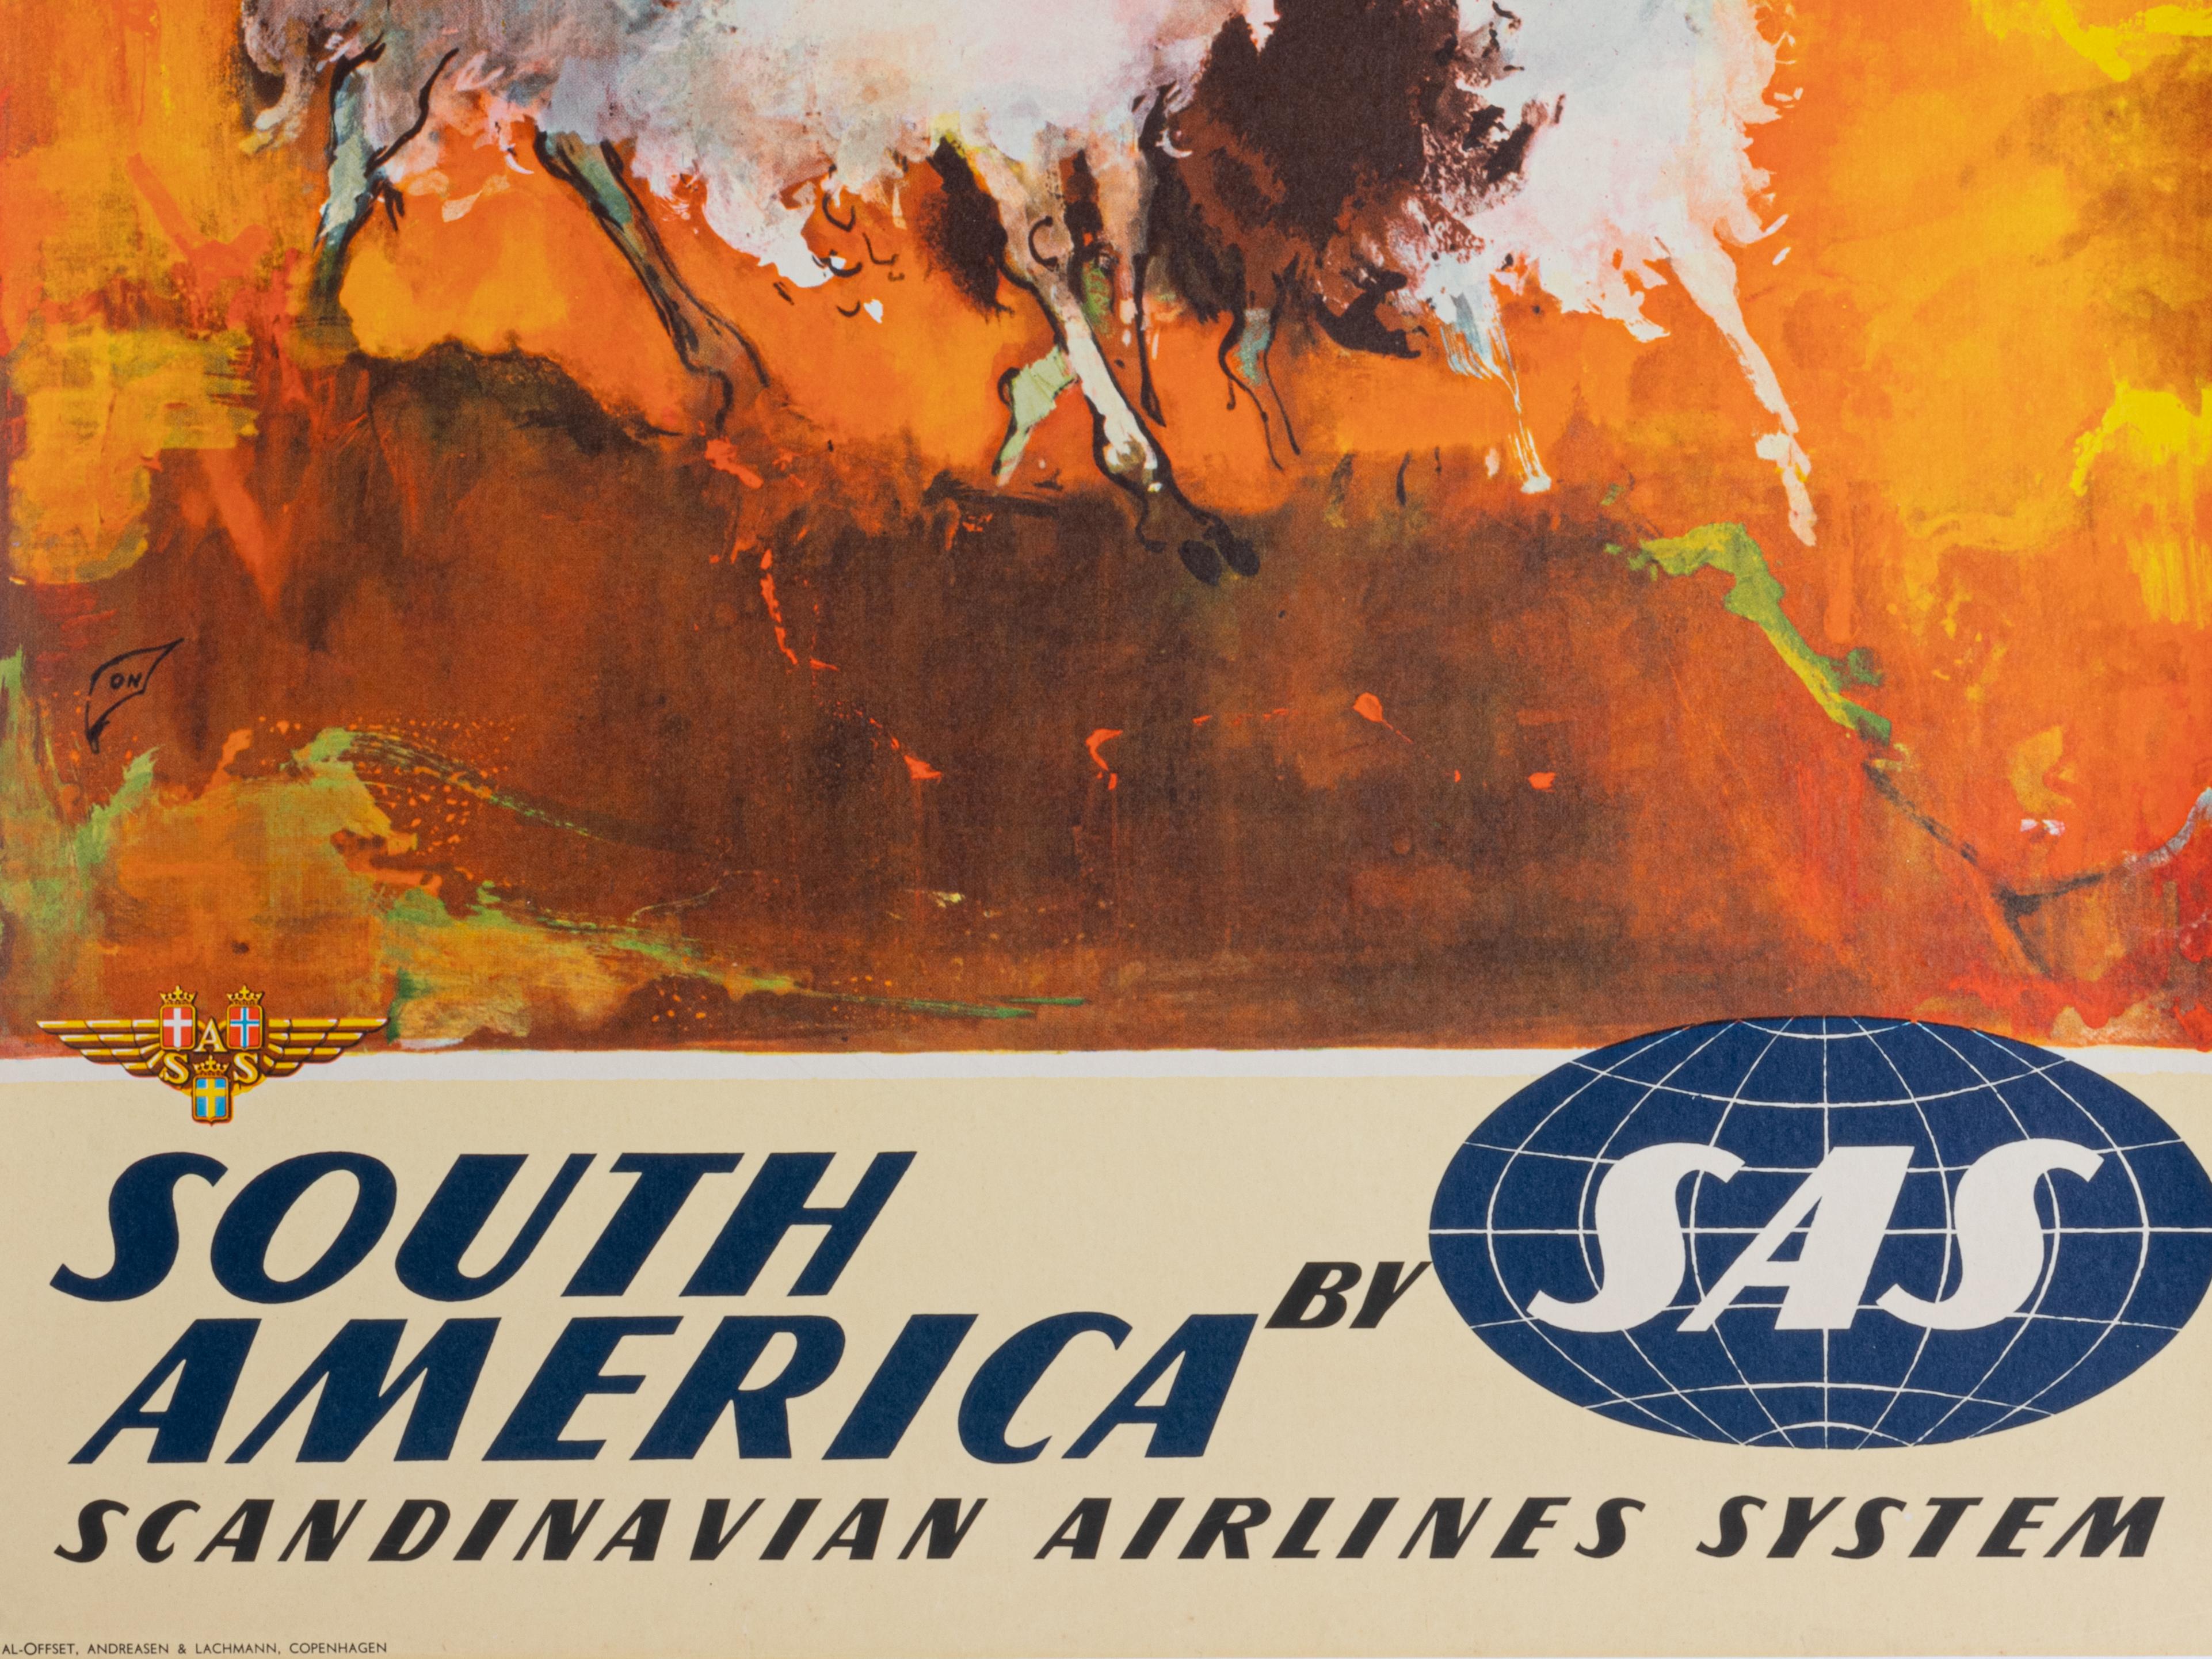 Affiche publicitaire scandinave pour SAS destinée à promouvoir le tourisme en Amérique du Sud.

Artistics : Otto Nielsen (1916 - 2000)
Titre : Amérique du Sud par SAS
Date : 1960
Taille (l x h) : 24.8 x 39.2 in / 63 x 99.6 cm
Imprimeur : Al-Offset,